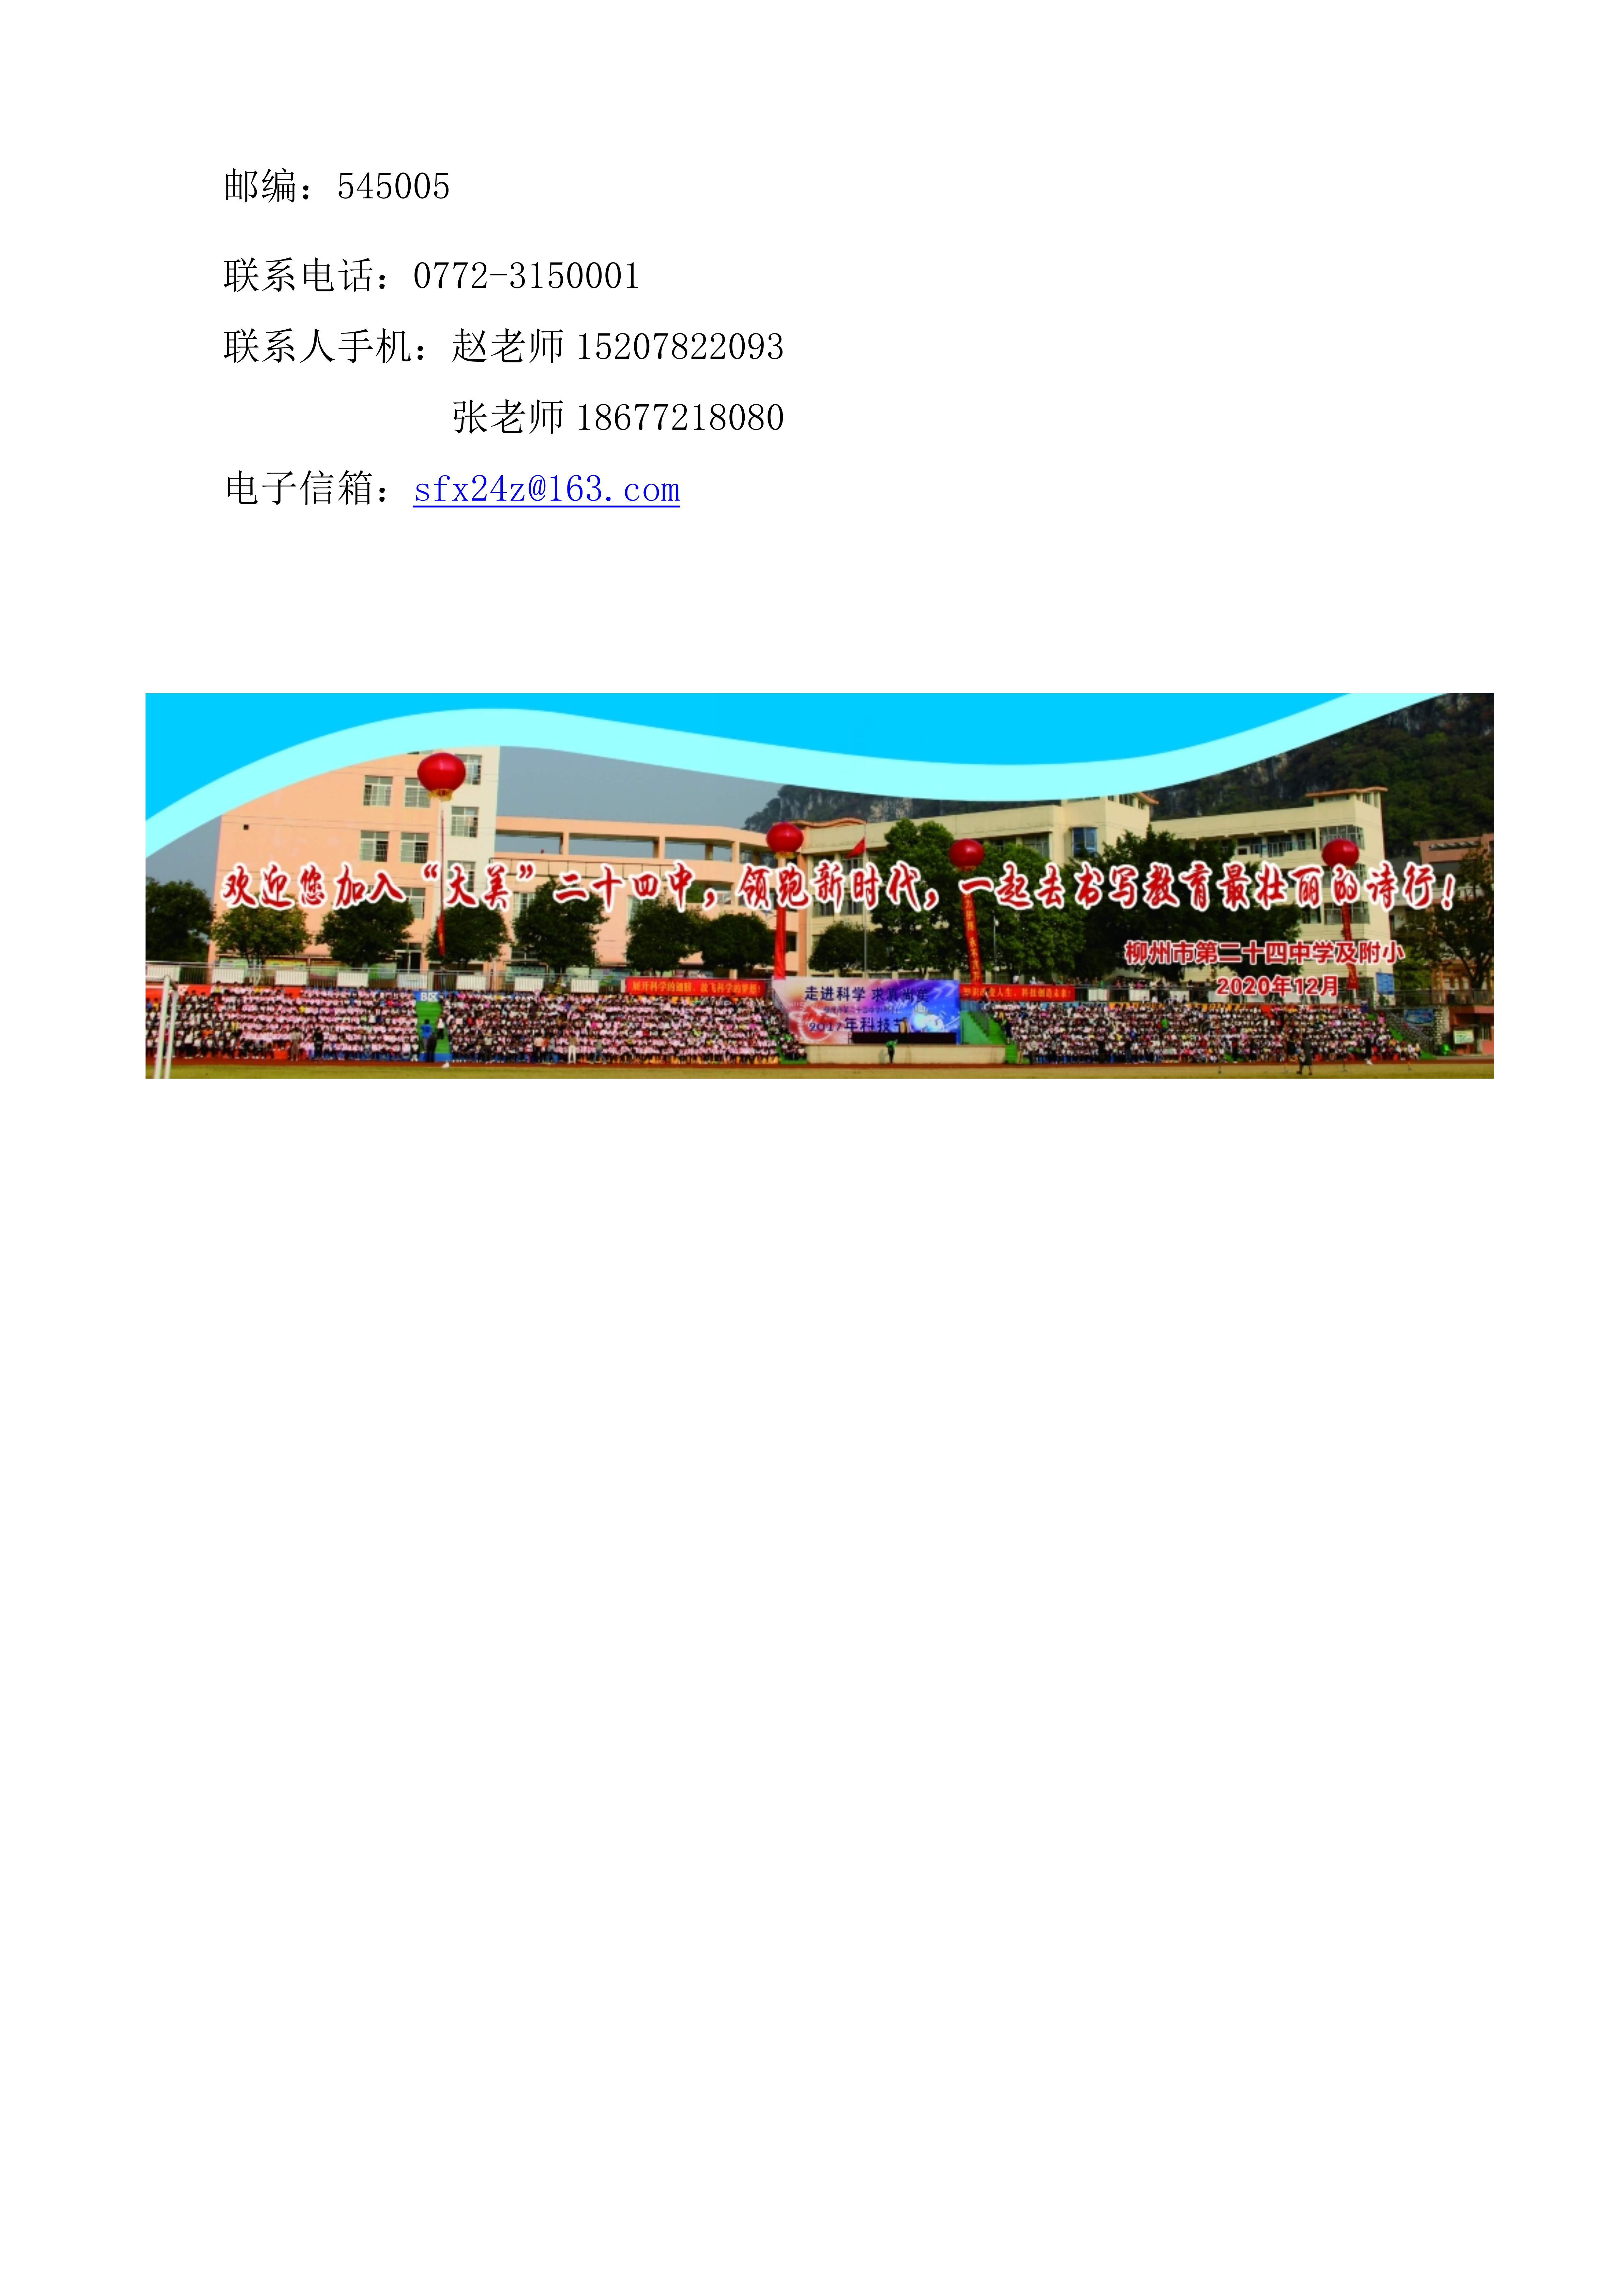 柳州市第二十四中学2021招聘简章_9343_3.jpg